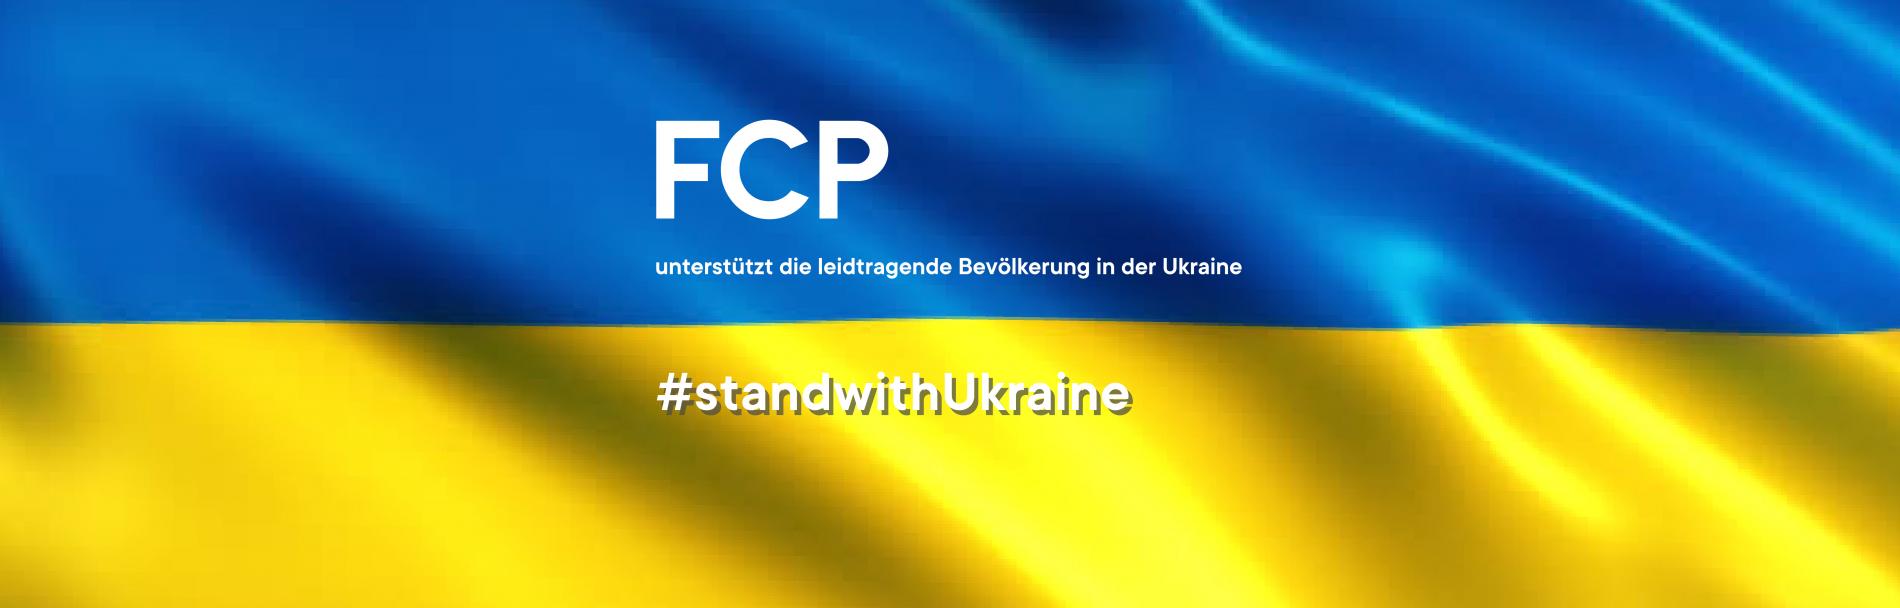 FCP unterstützt die leidtragende Bevölkerung der Ukraine